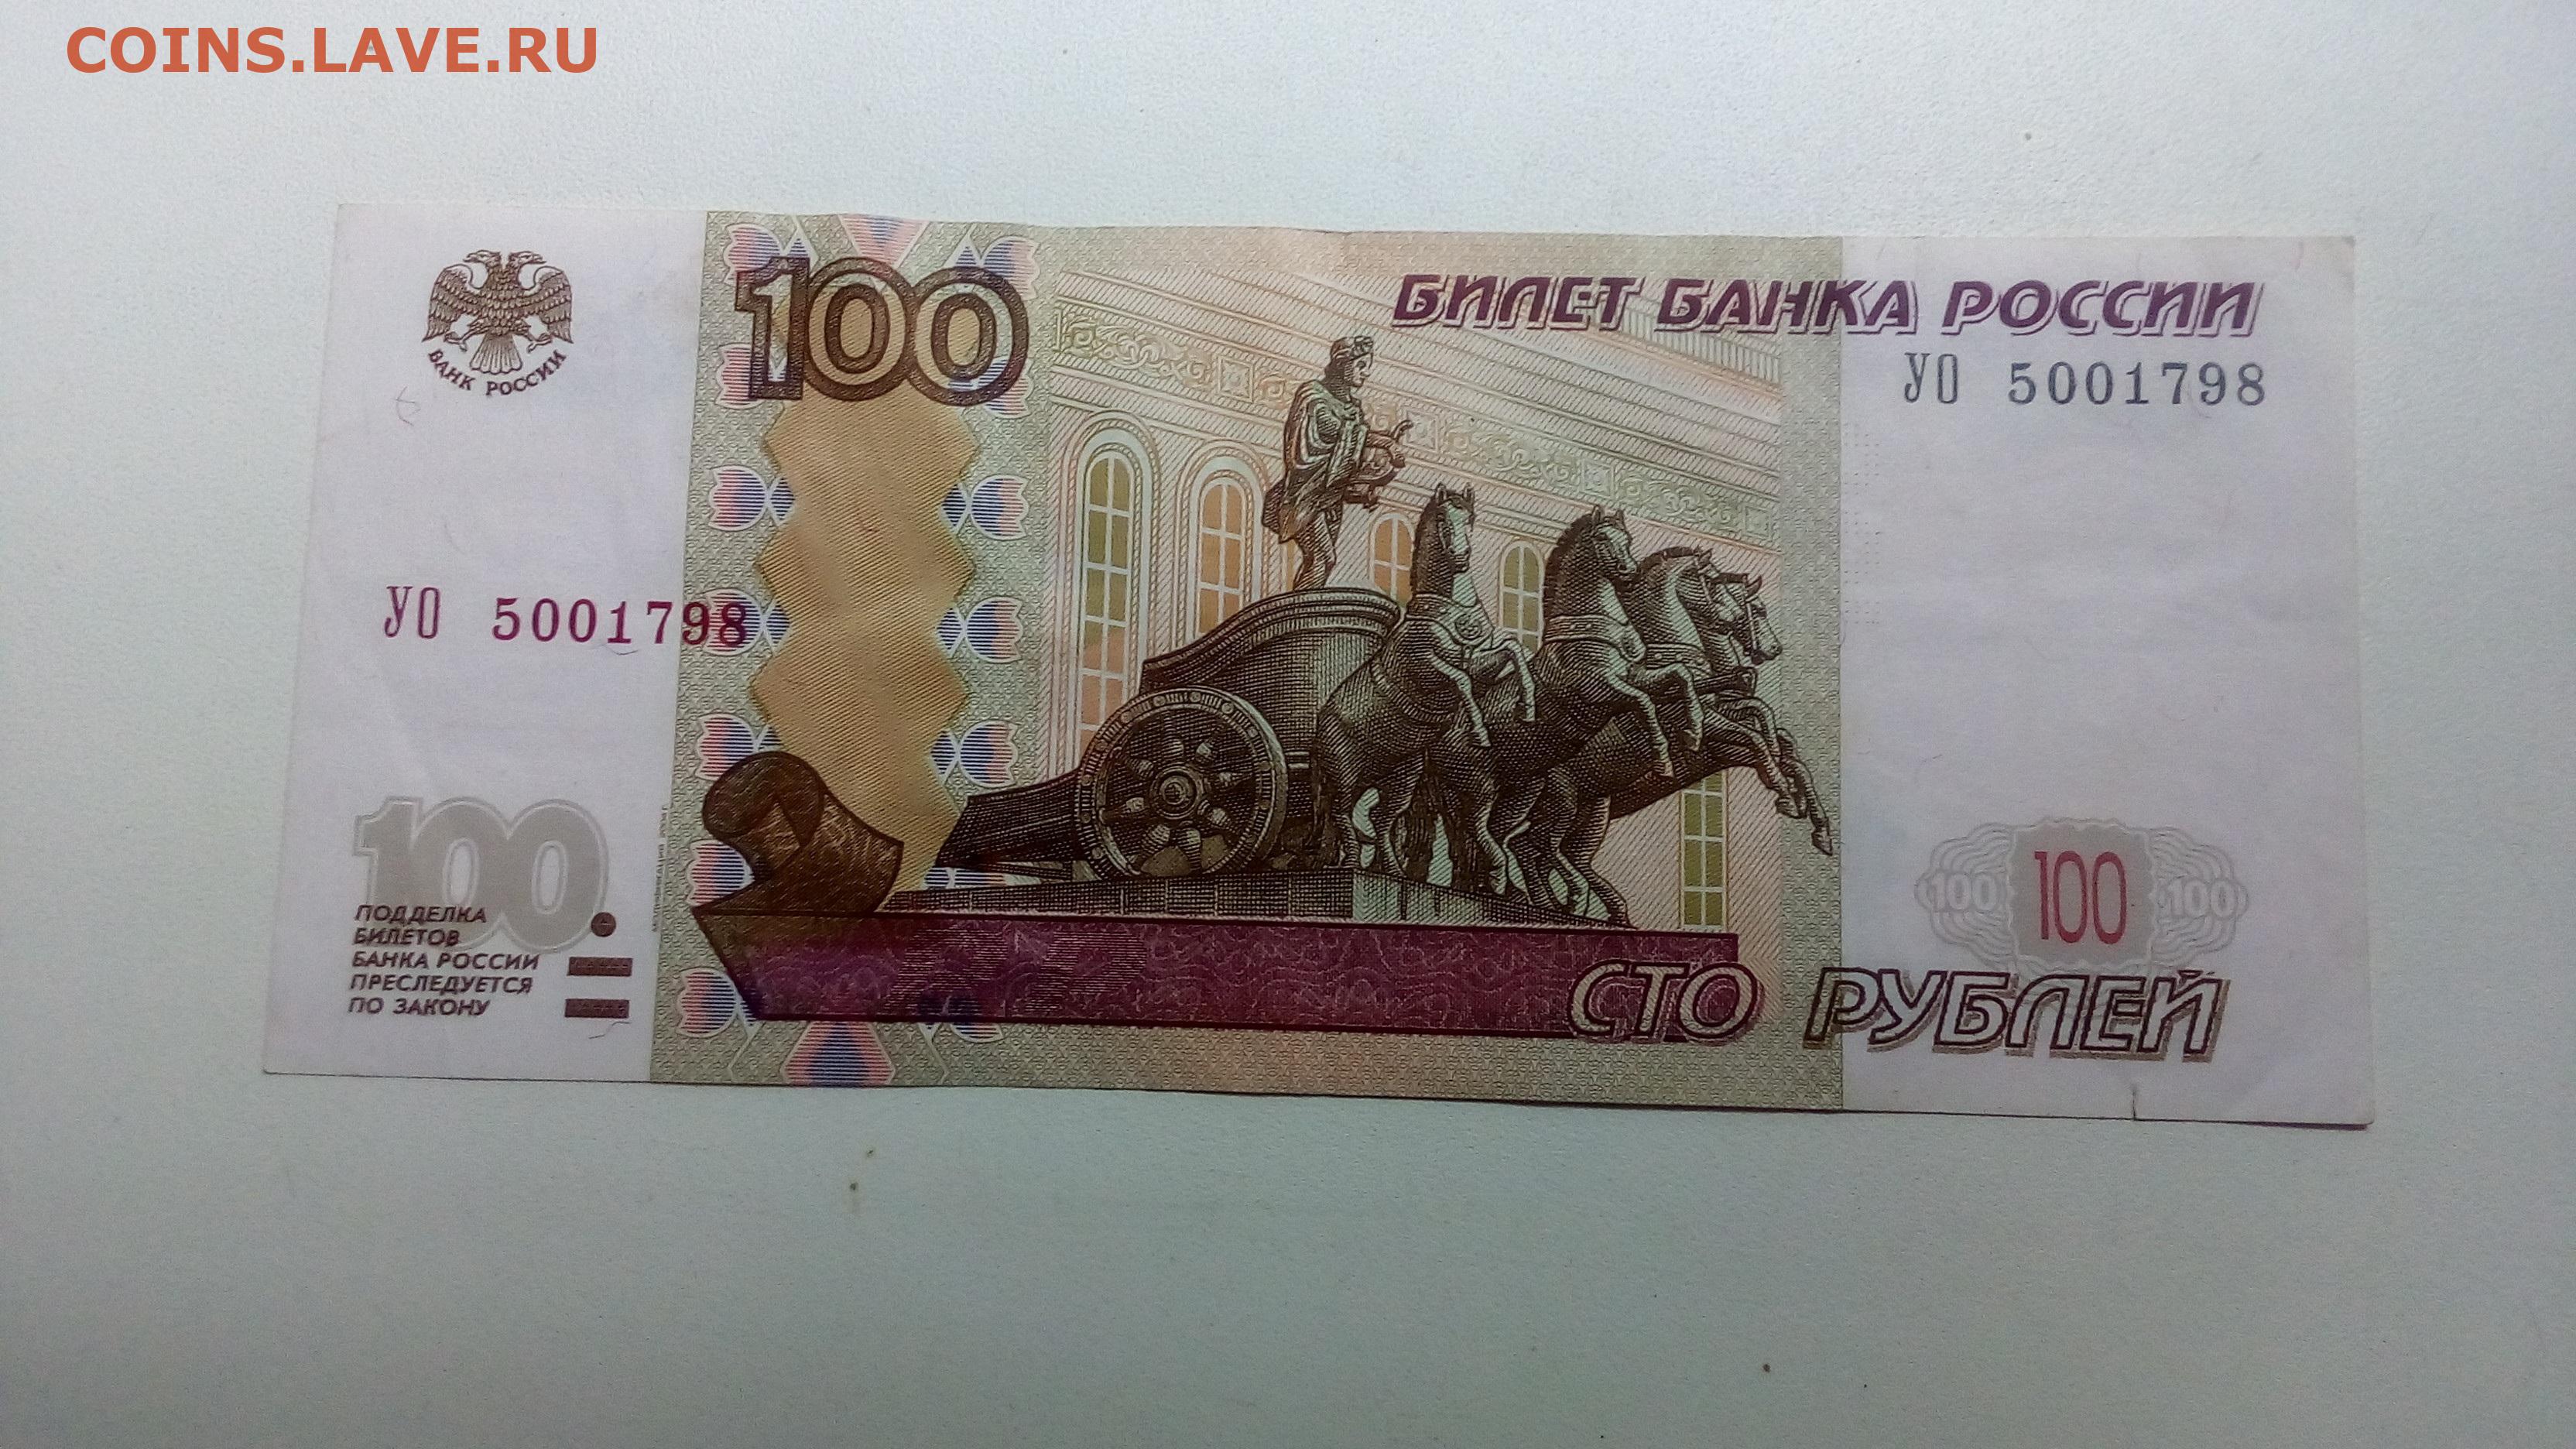 0 80 в рублях. 100 Рублей. Купюра 100 рублей. Банкнота 100 рублей 1997. СТО рублей для распечатки.